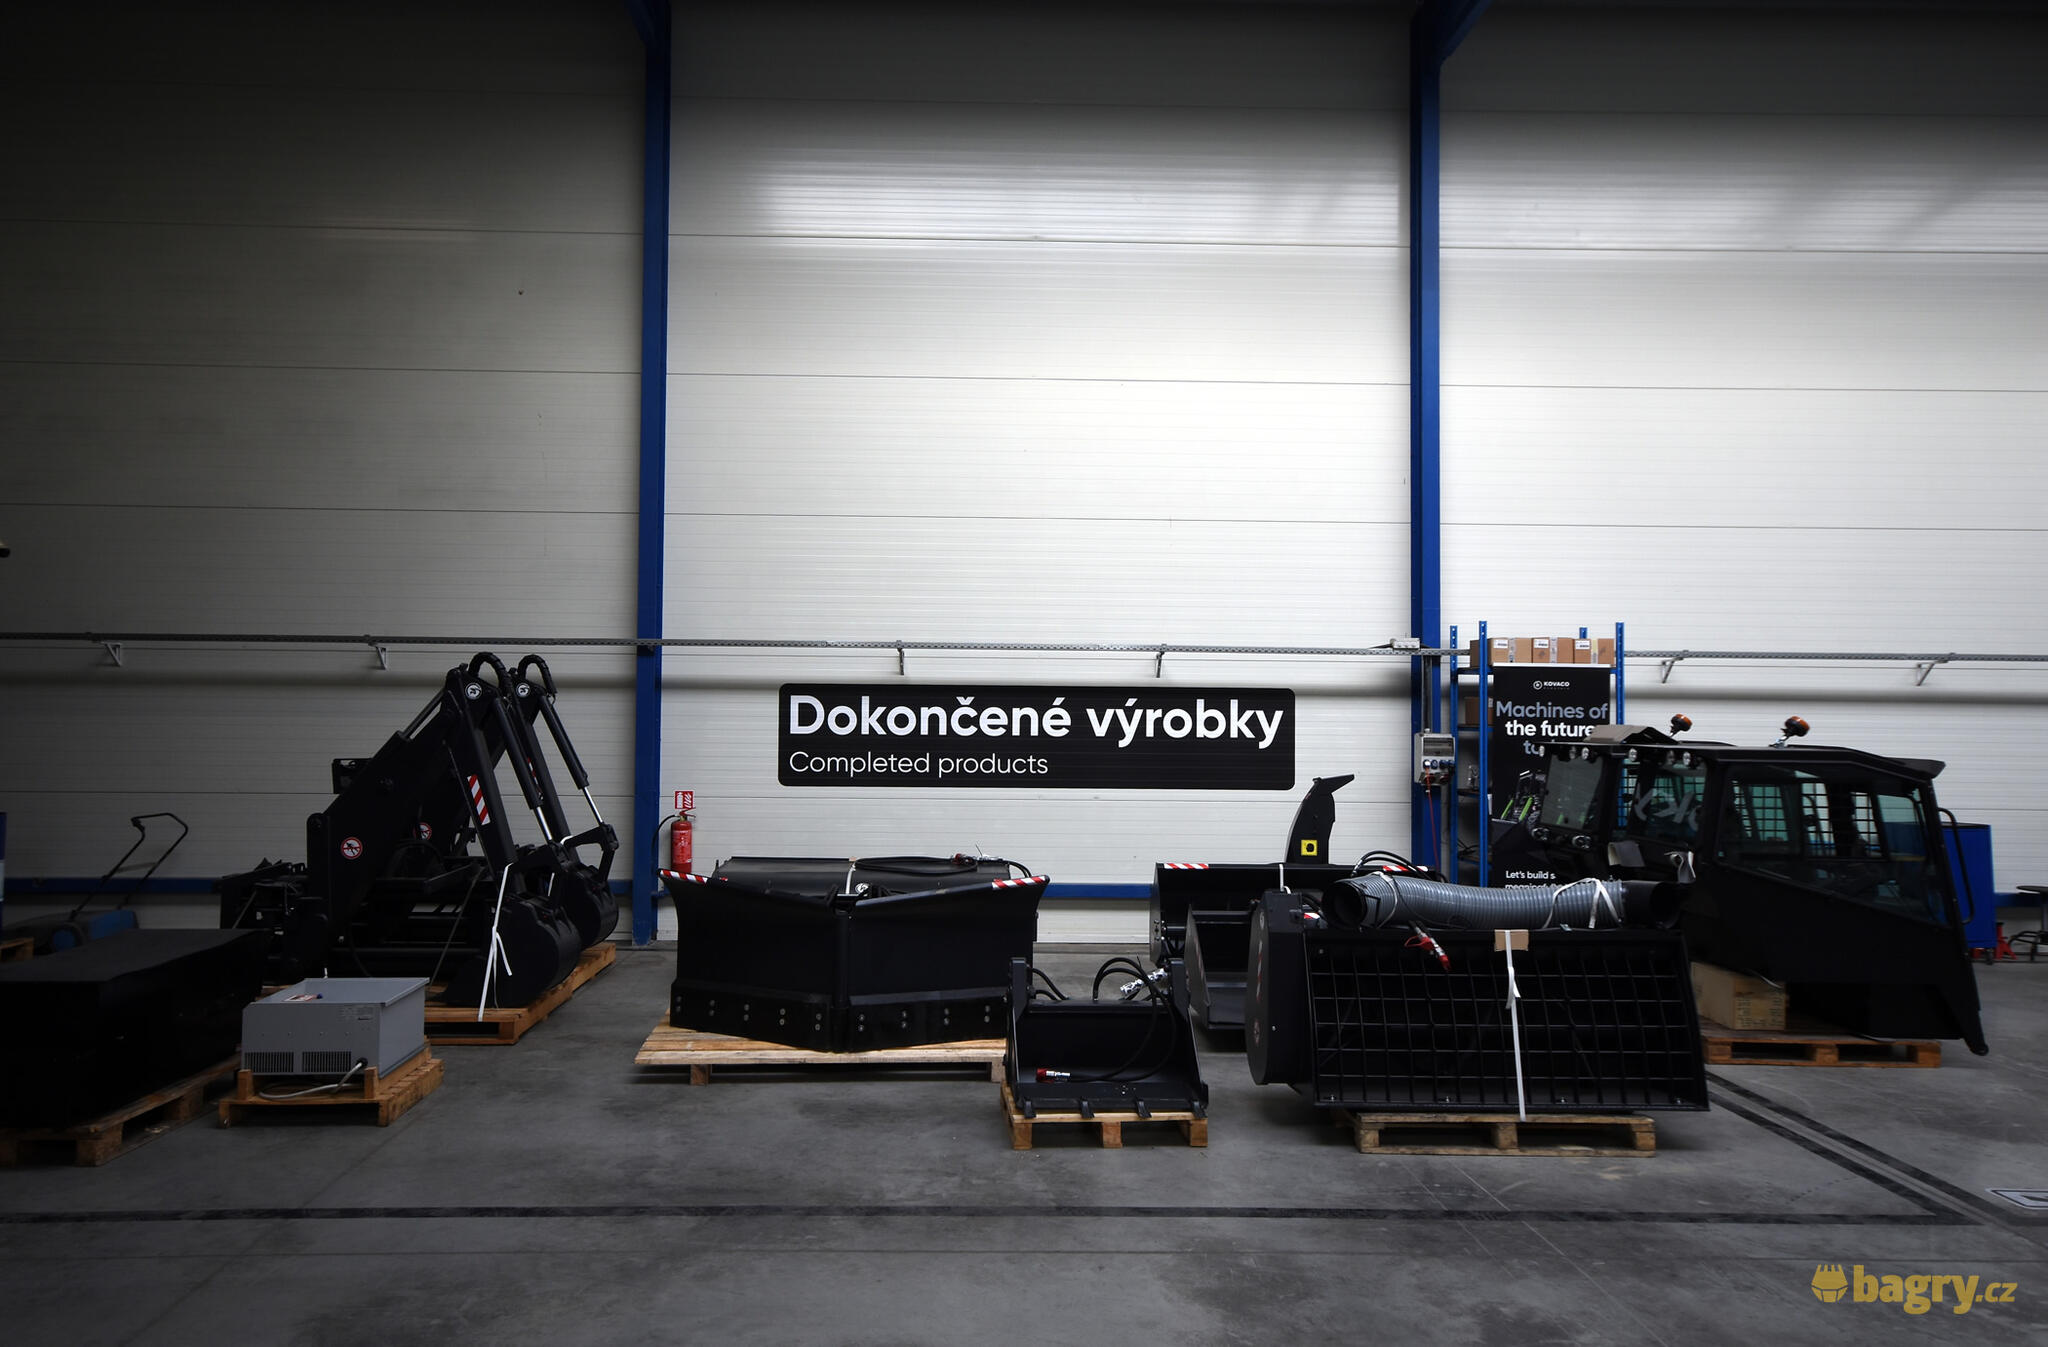 26. Hydraulická přídavná zařízení dovezená ze Slovenska se budou postupně předělávat na elektrický pohon